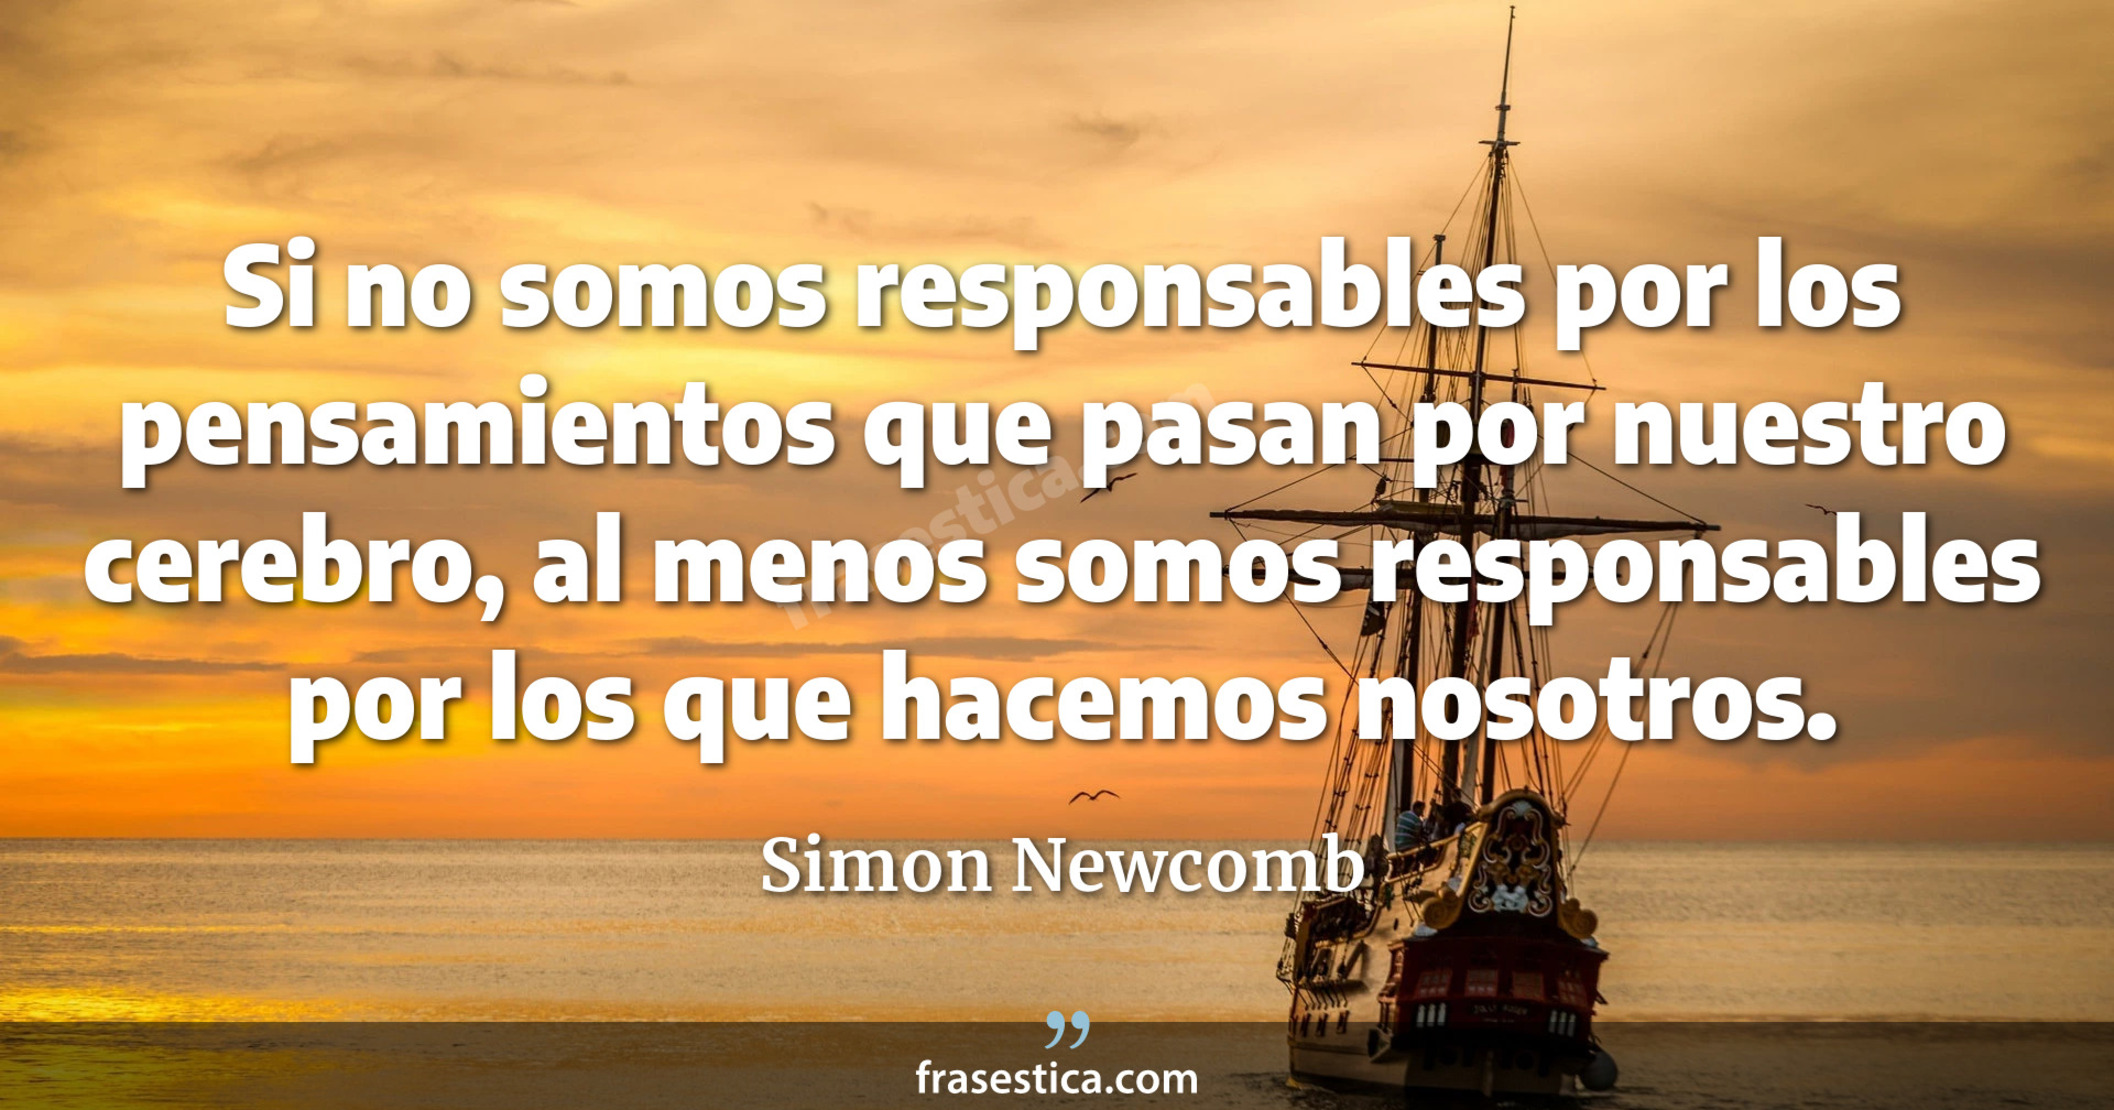 Si no somos responsables por los pensamientos que pasan por nuestro cerebro, al menos somos responsables por los que hacemos nosotros. - Simon Newcomb